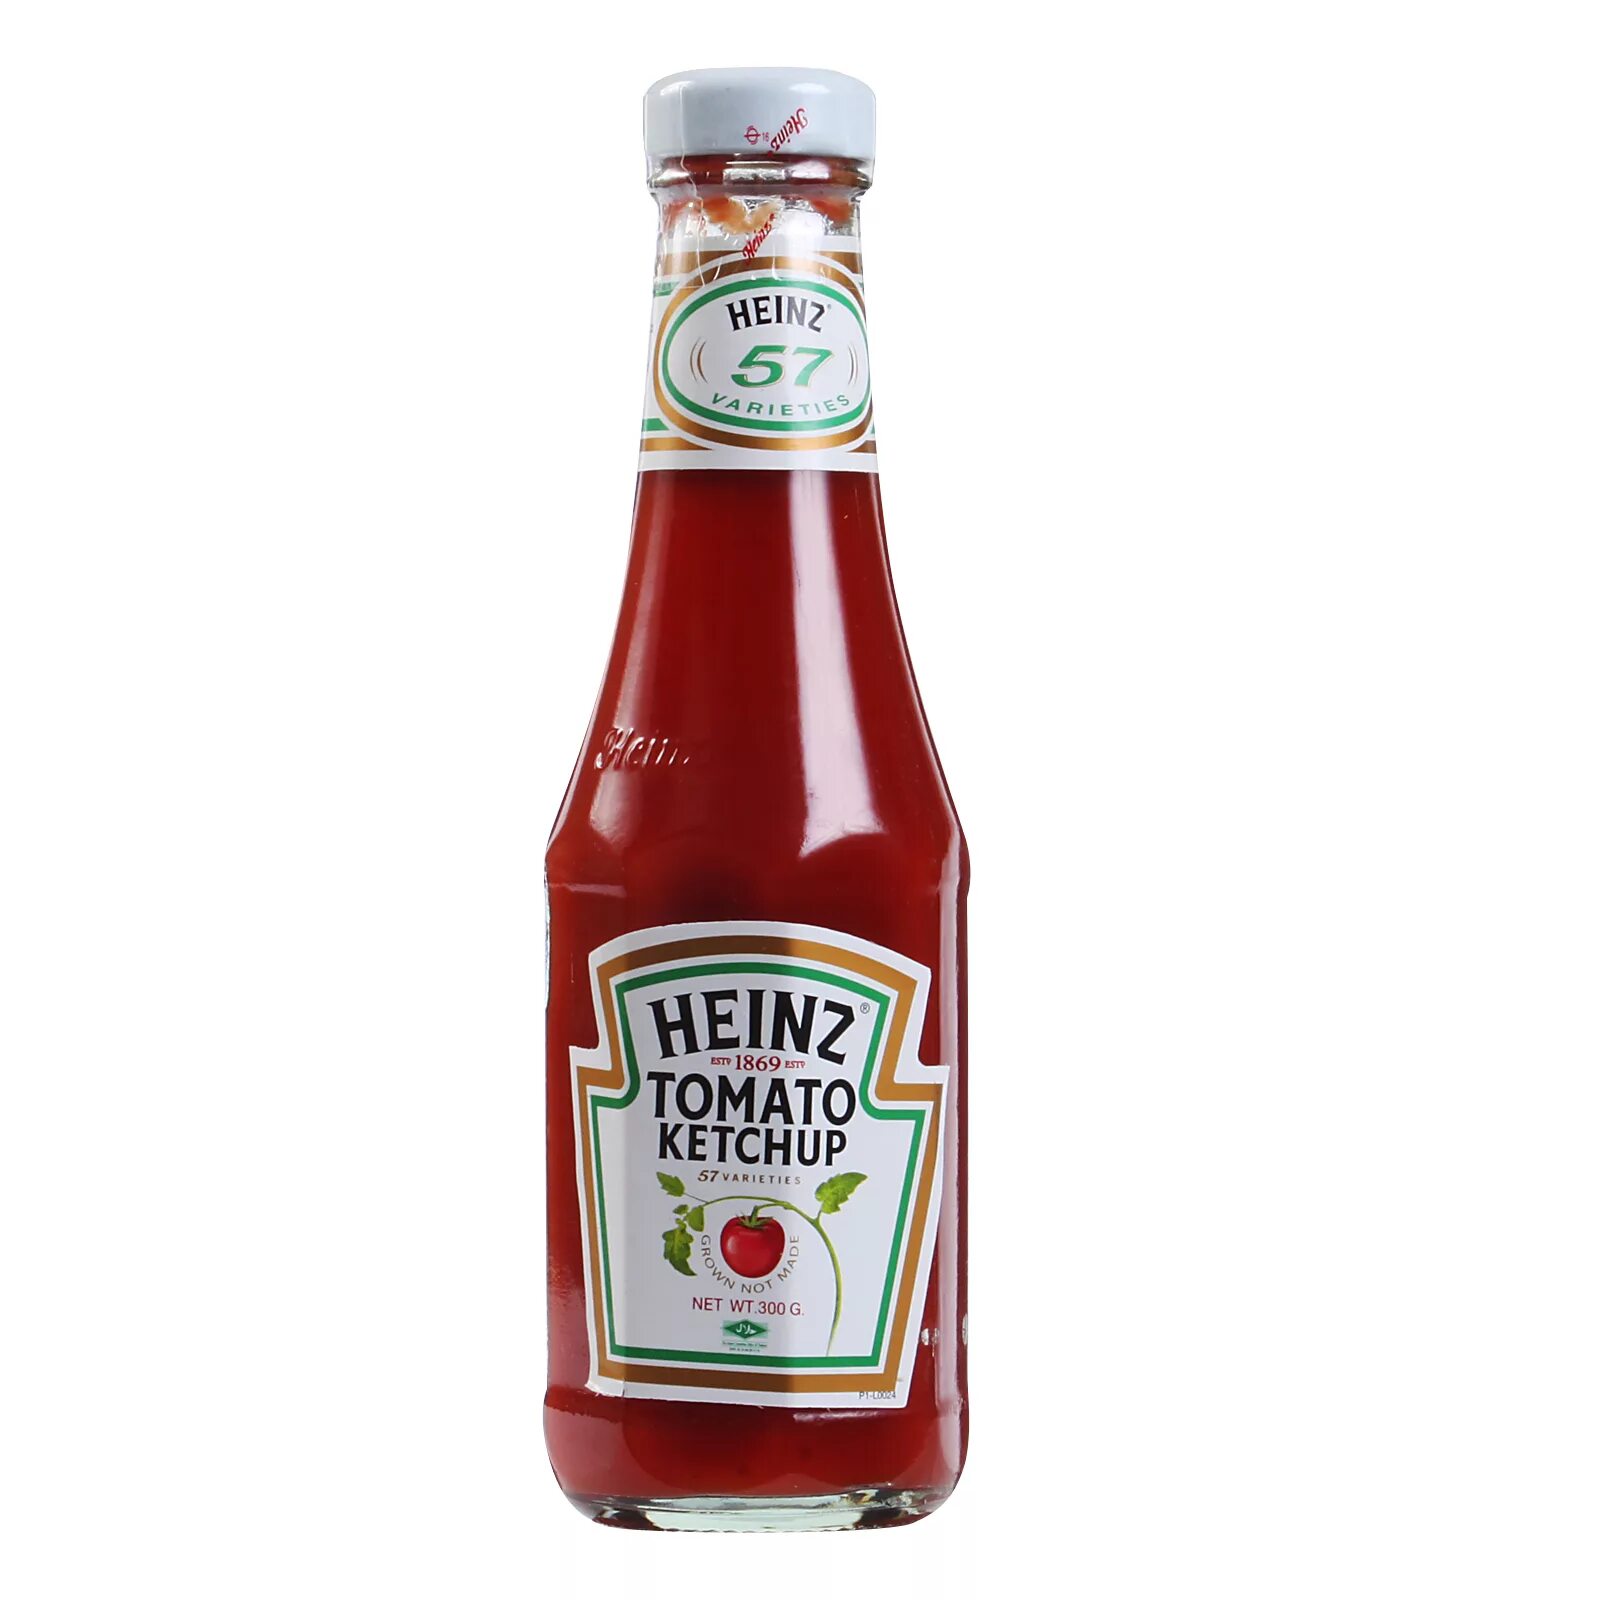 Кетчуп Хайнц томатный. "Ketchup ""Heinz"" Tomato 570g  ". Heinz 800 томатный. Кетчуп Хайнц в стеклянной бутылке. Tomato ketchup